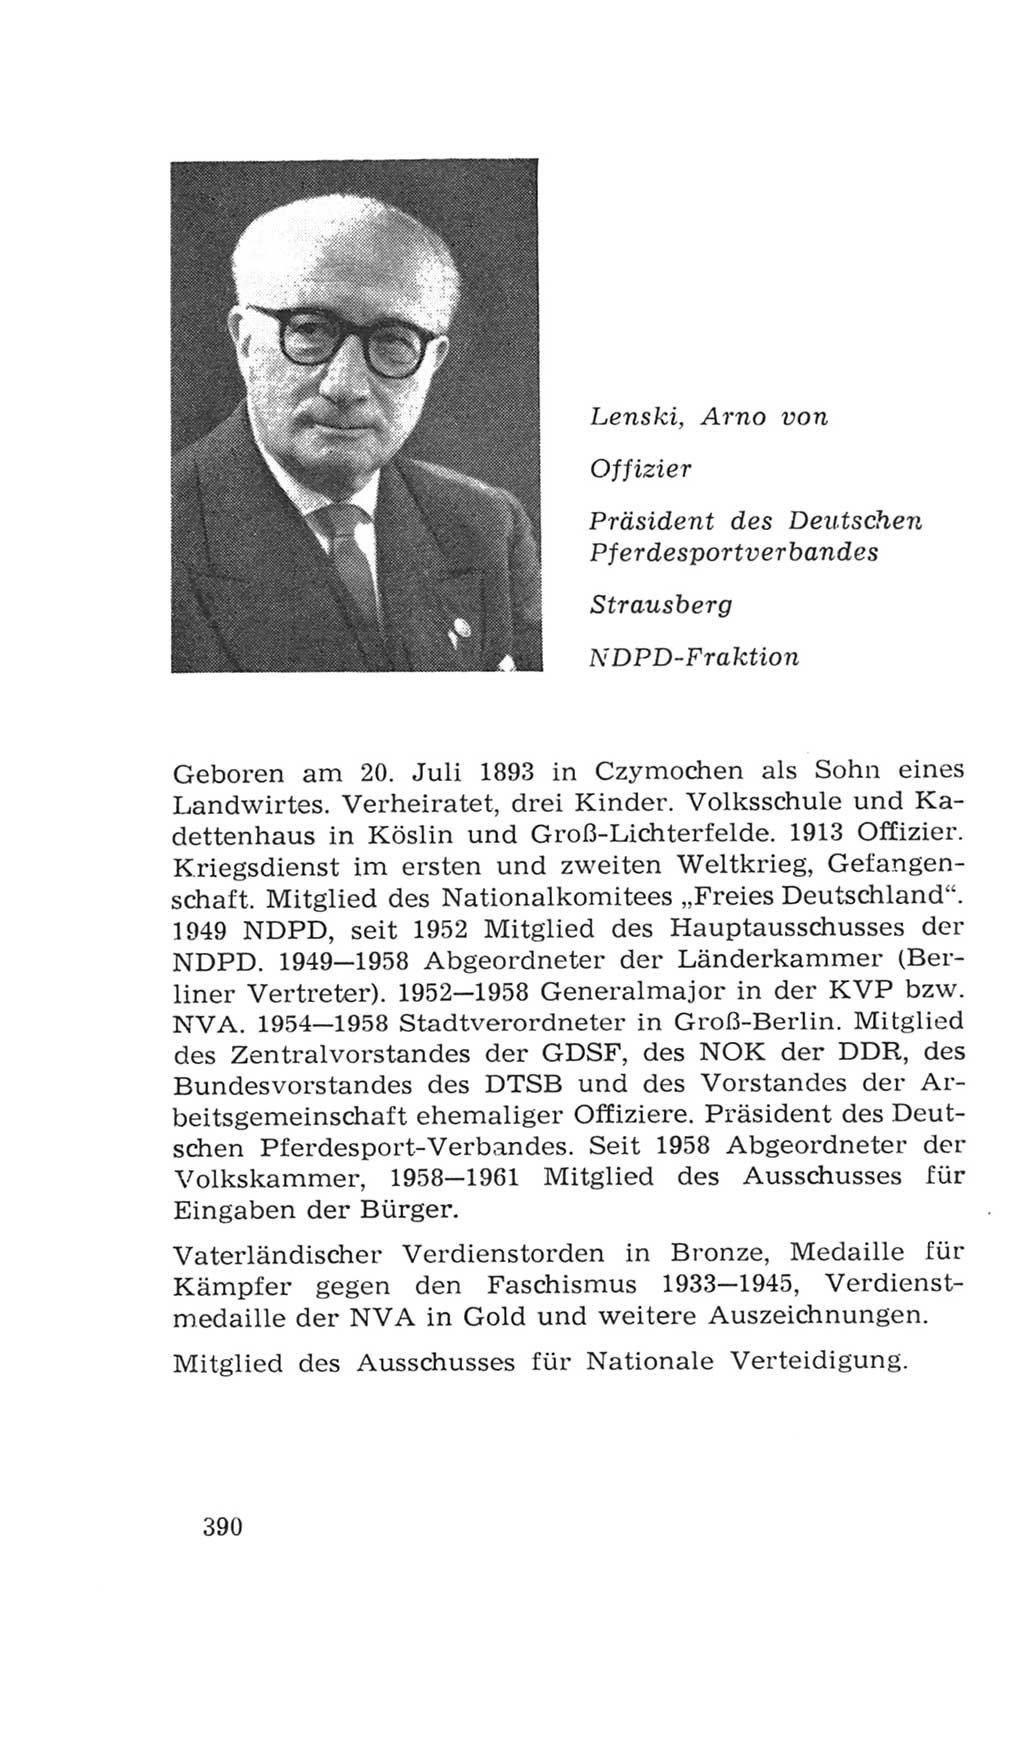 Volkskammer (VK) der Deutschen Demokratischen Republik (DDR), 4. Wahlperiode 1963-1967, Seite 390 (VK. DDR 4. WP. 1963-1967, S. 390)